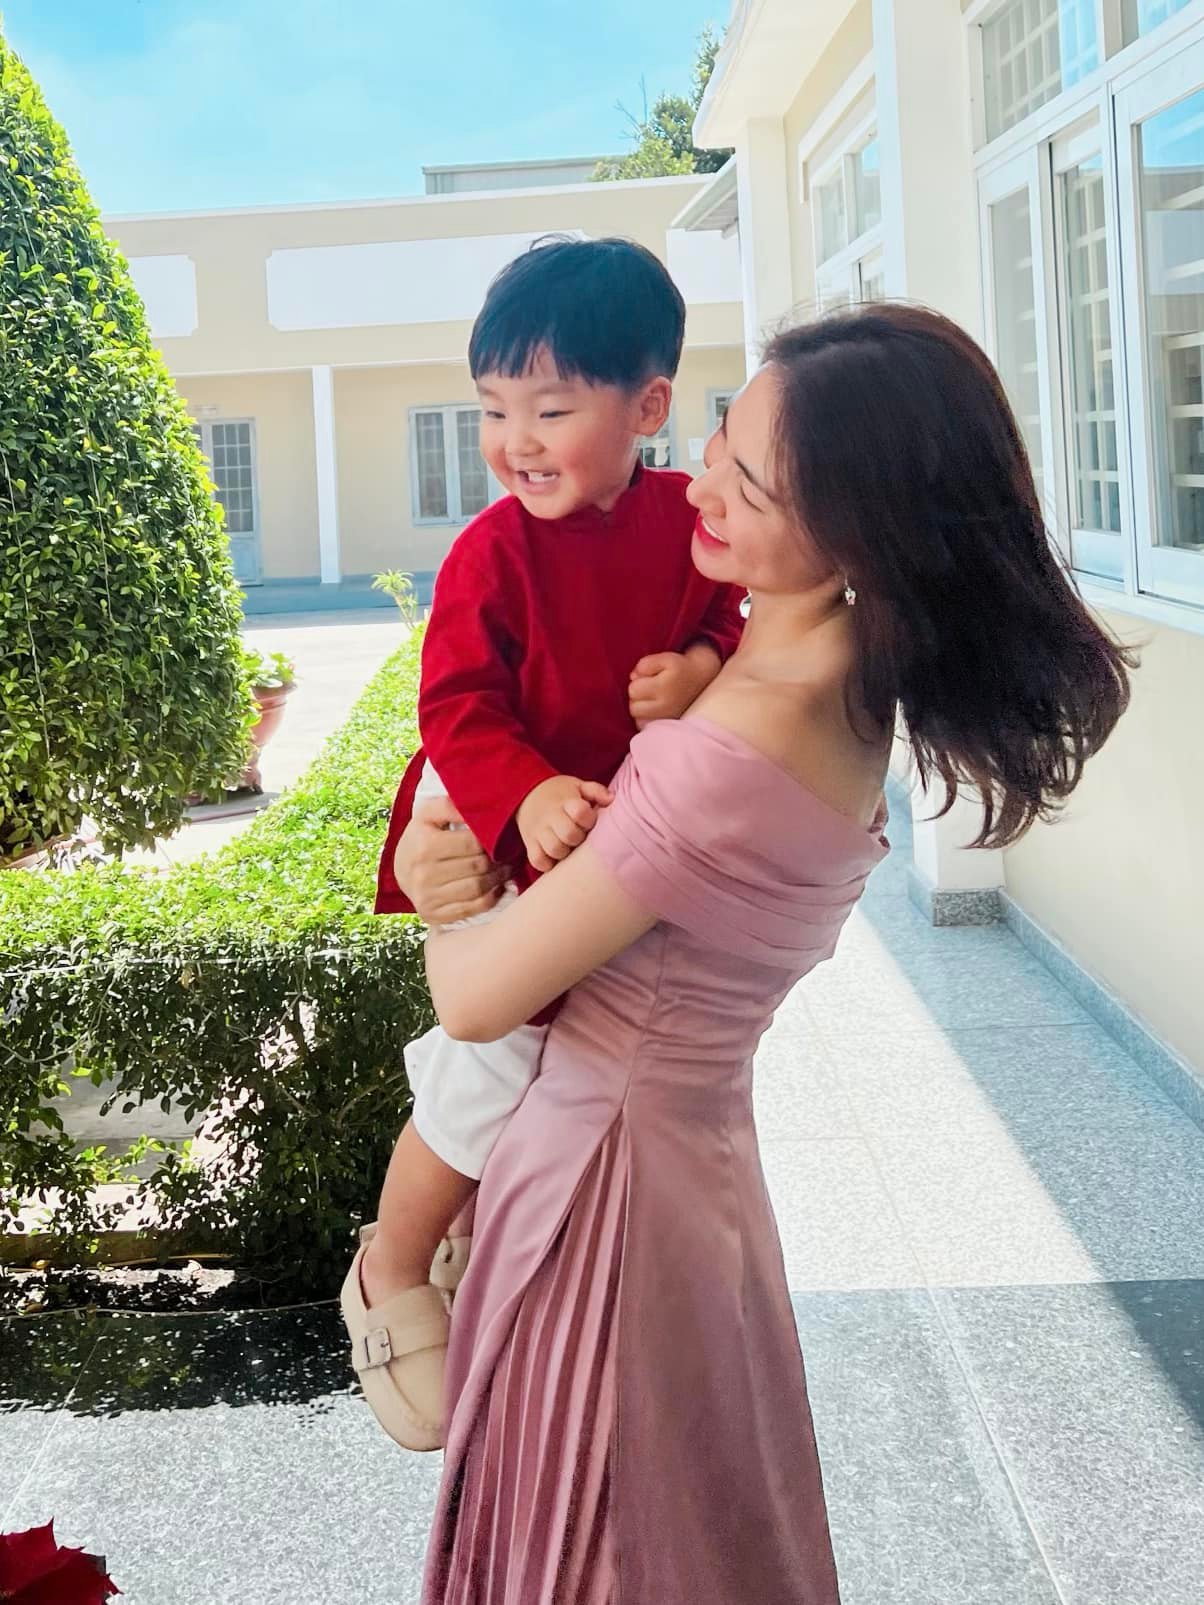 Trong thời tiết nắng ấm của Sài Gòn, Hòa Minzy chọn váy hồng trễ vai vào ngày mùng 1 Tết. Cô diện cho con trai Bo bộ áo dài đỏ rực rỡ và ngọt ngào bày tỏ: 'Năm mới cho Hoà Minzy xin được chúc tất cả mọi người luôn bình an và hạnh phúc'.